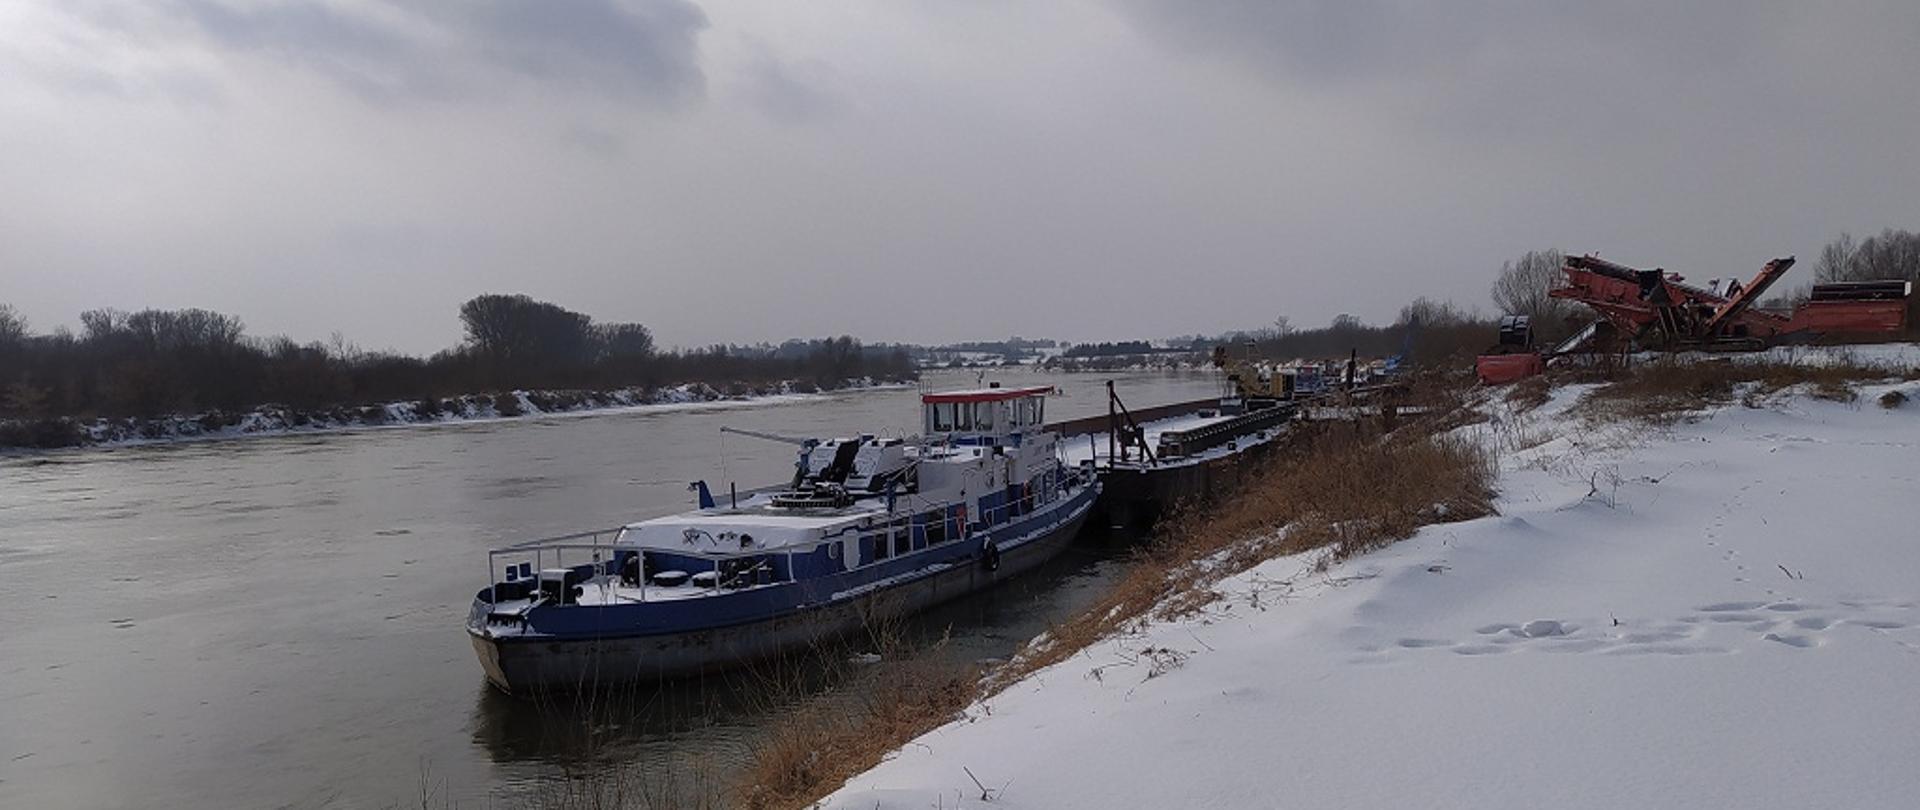 1. Fragment koryta rzeki Wisły z zaśnieżonym brzegiem, na której z prawej strony przy zacumowana barka.